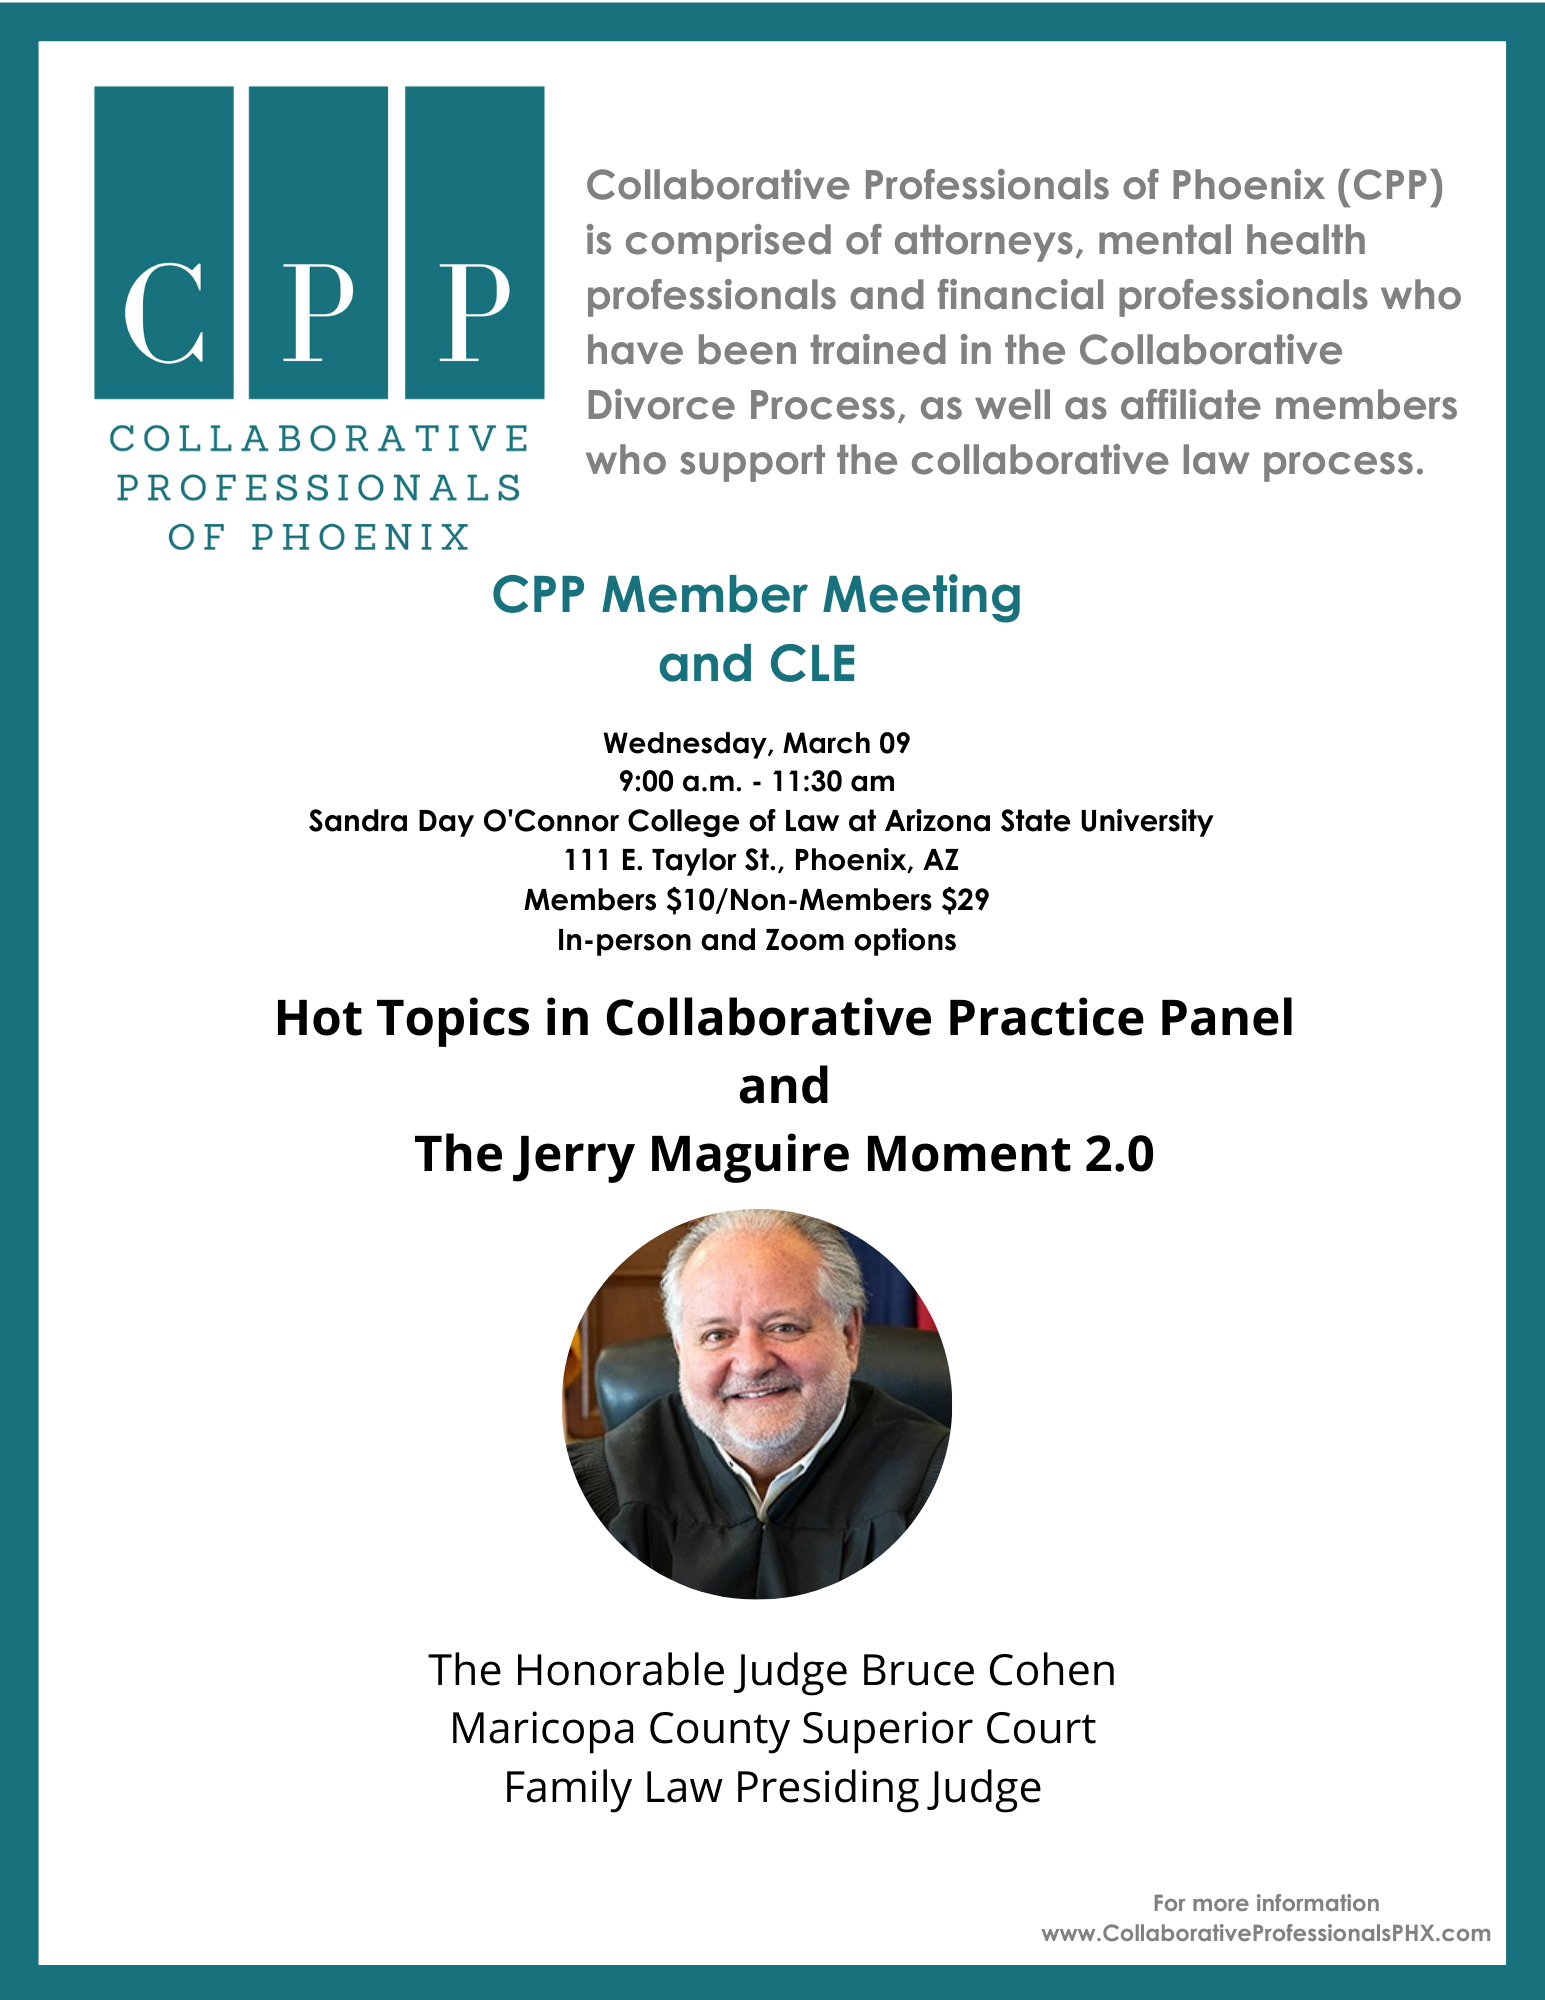 CPP Member Meeting & CLE